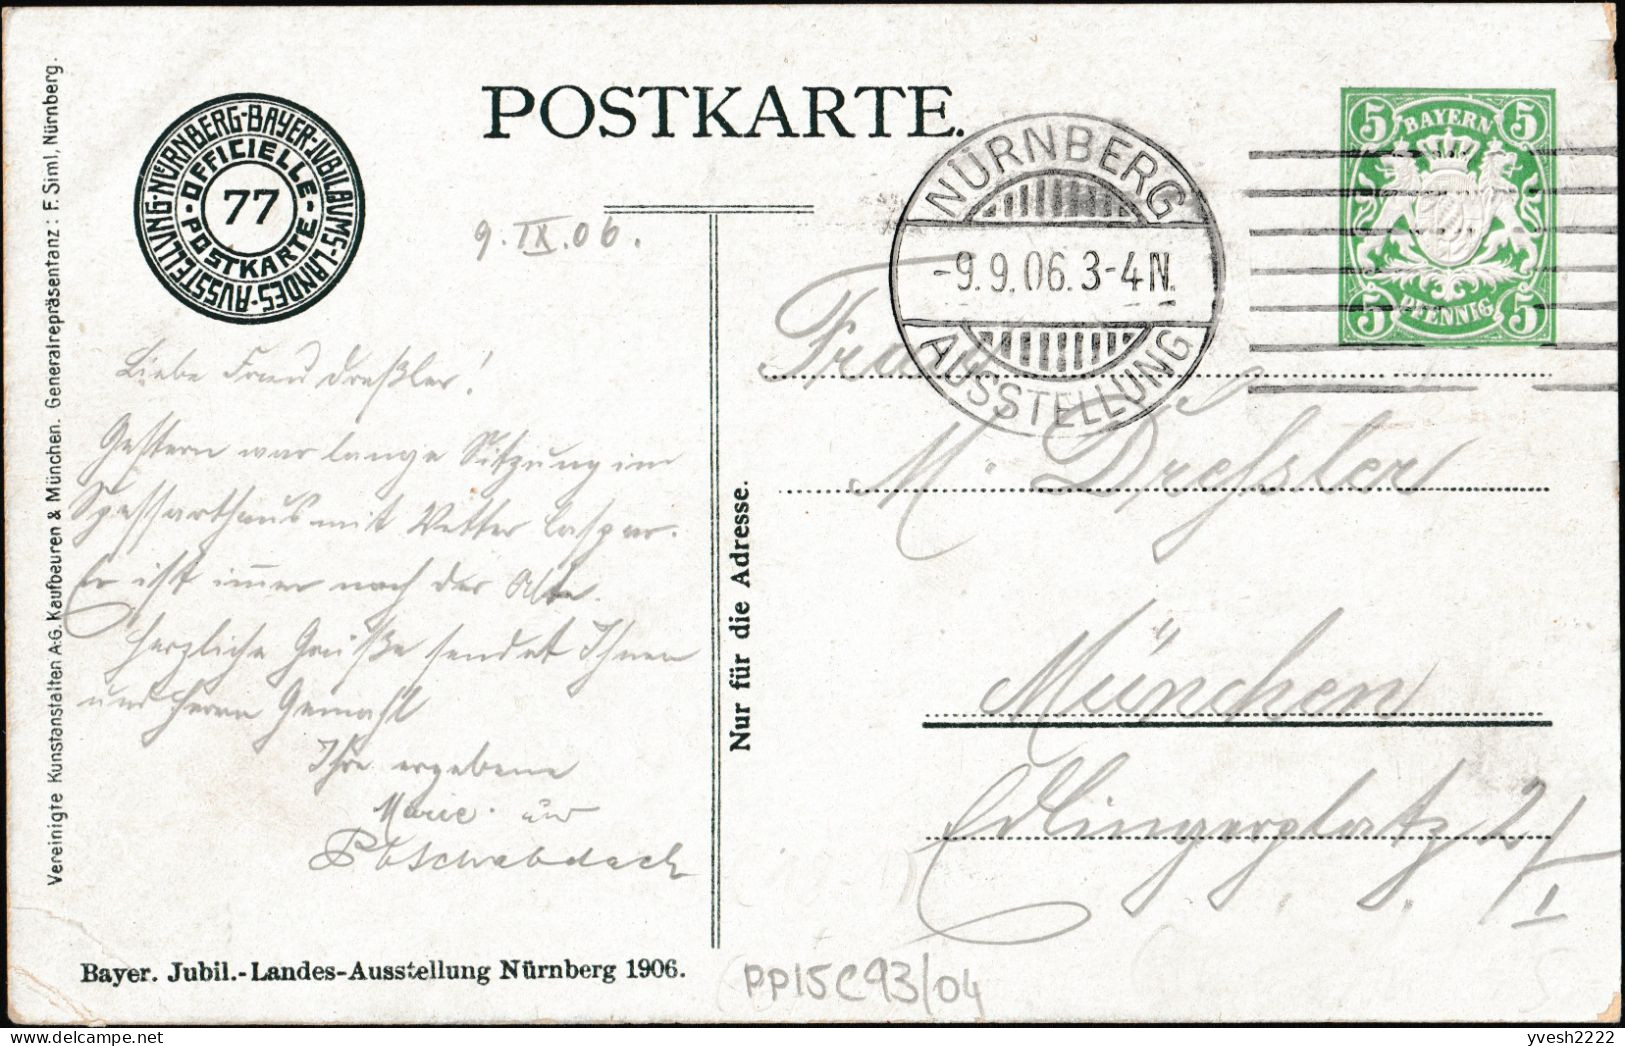 Bavière 1906. 3 entiers postaux timbrés sur commande. Pavillon de l'art, de jour et de nuit. Pélicans, art nouveau